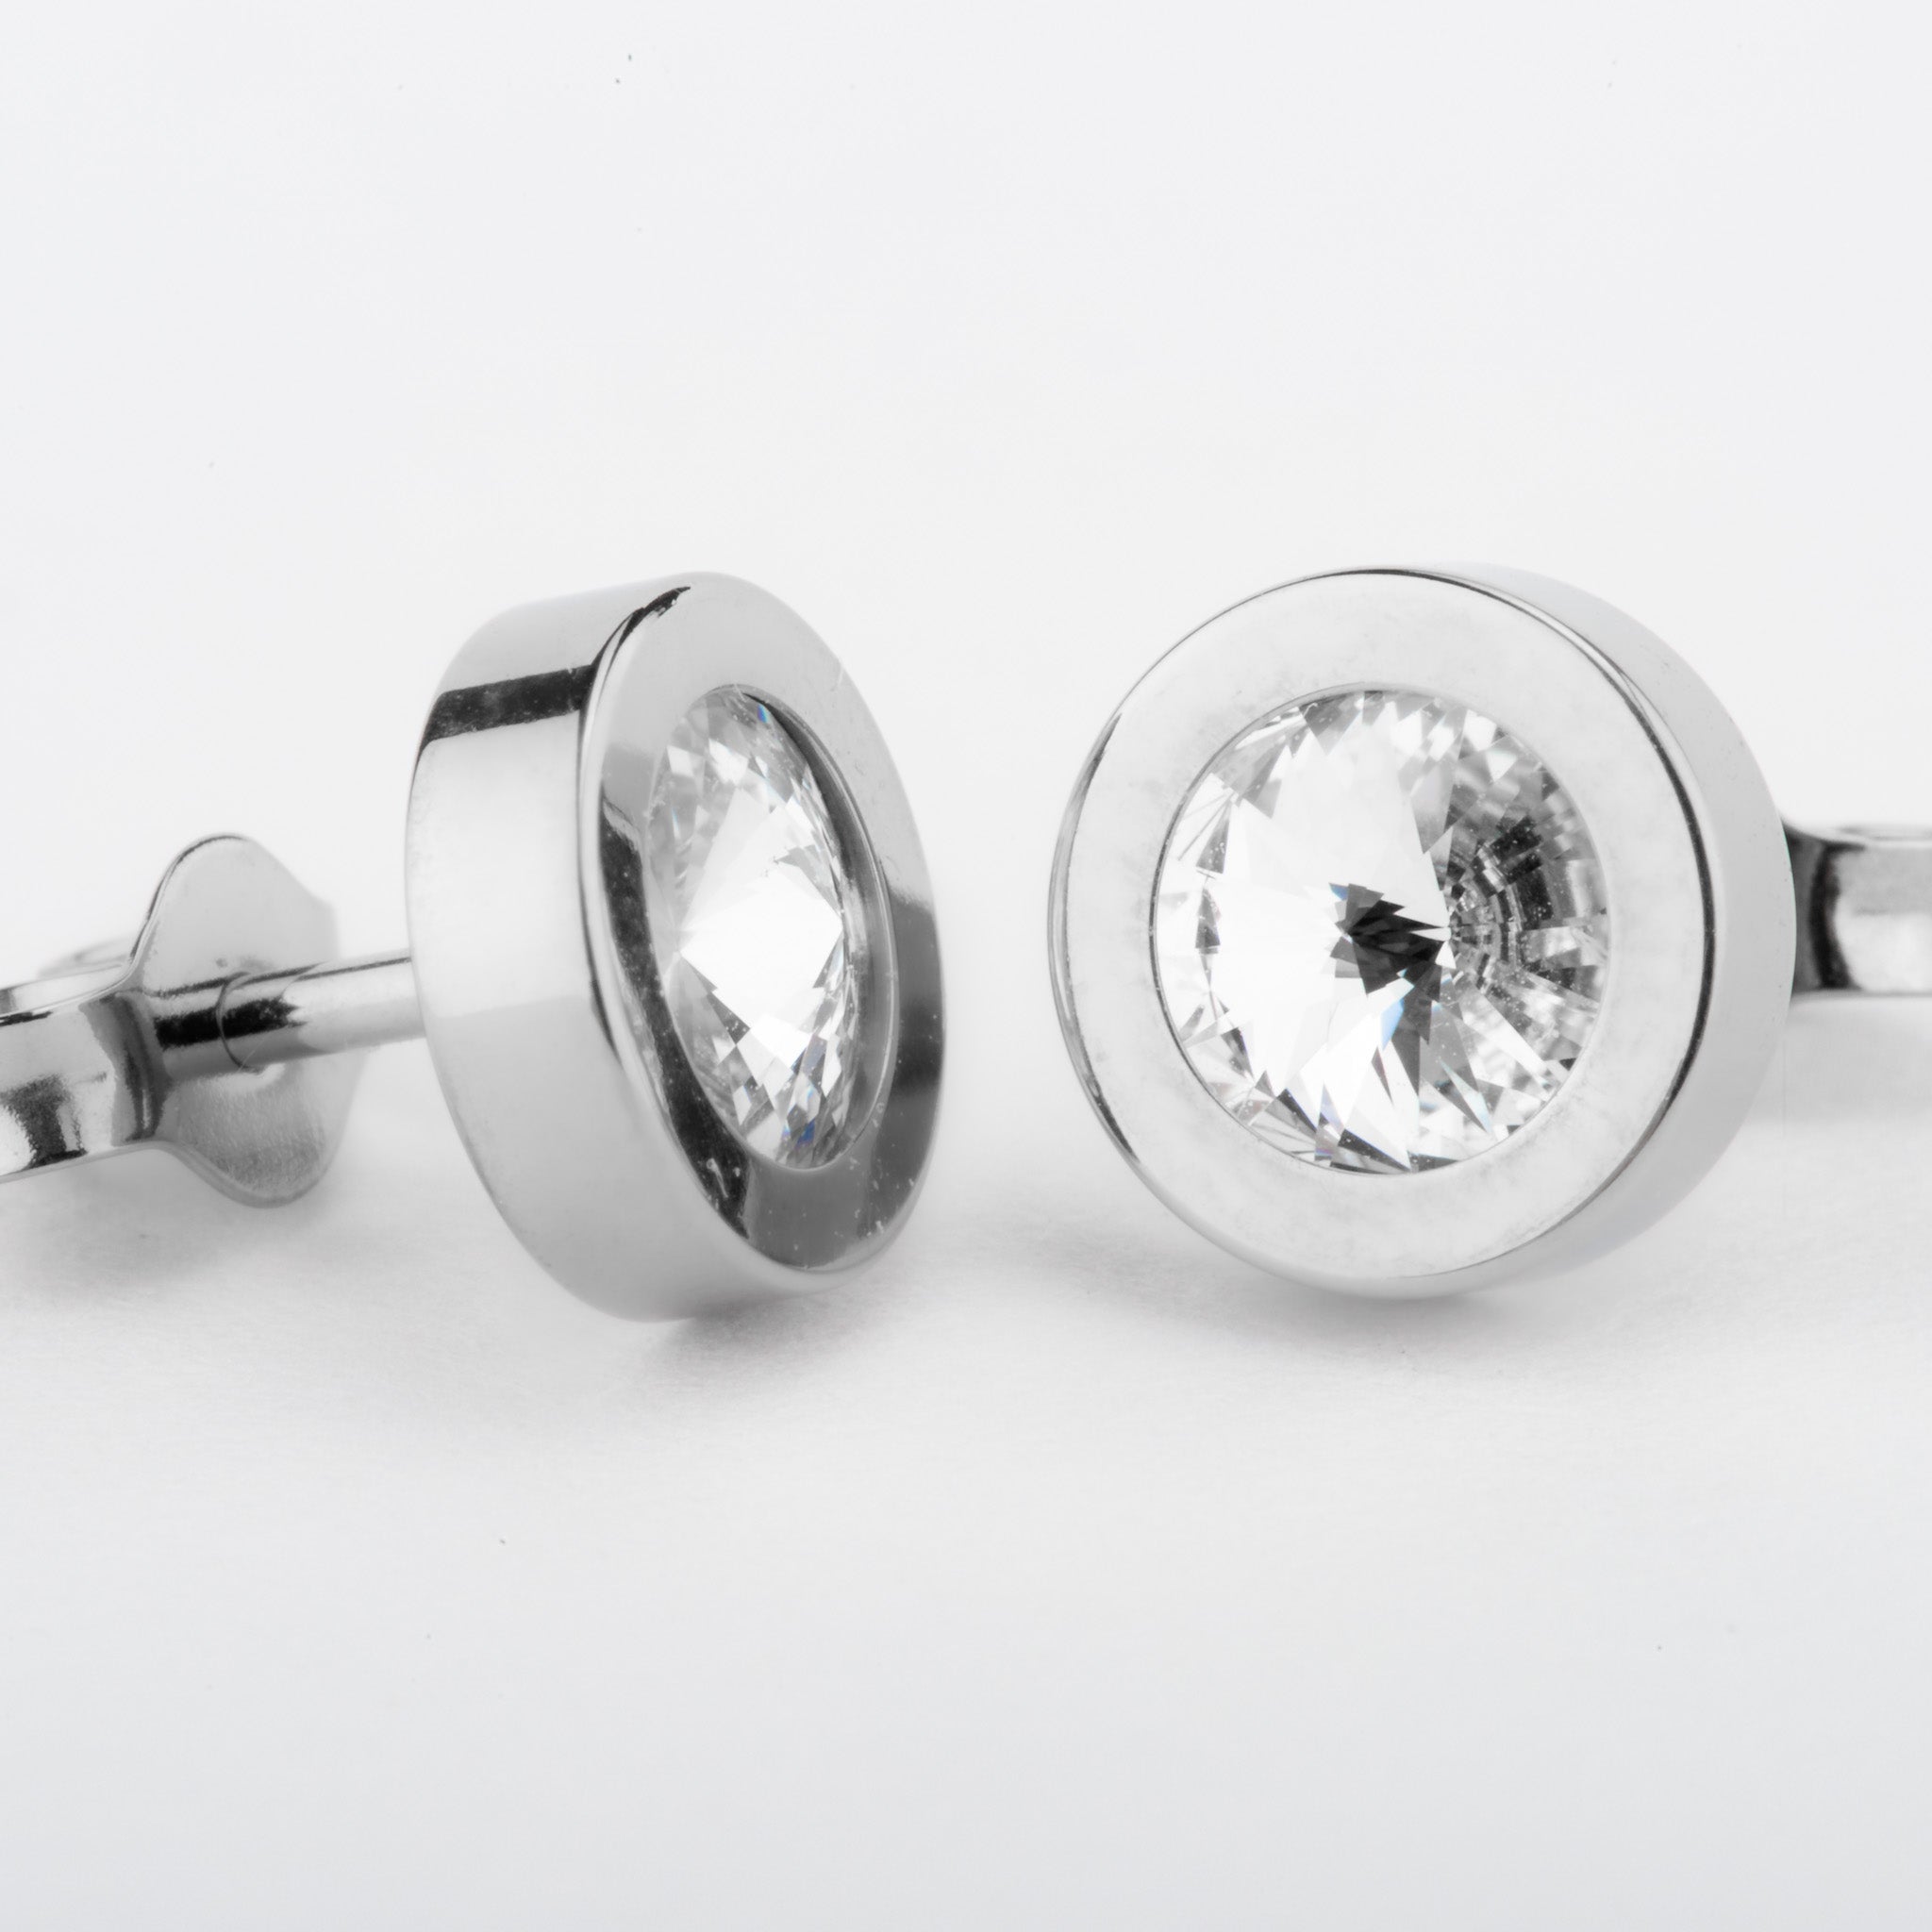 Ohrstecker rund mit Zirkonia Swarovski® aus Titan in Silber von nonu.Berlin - unterschiedlich liegend angeordnet